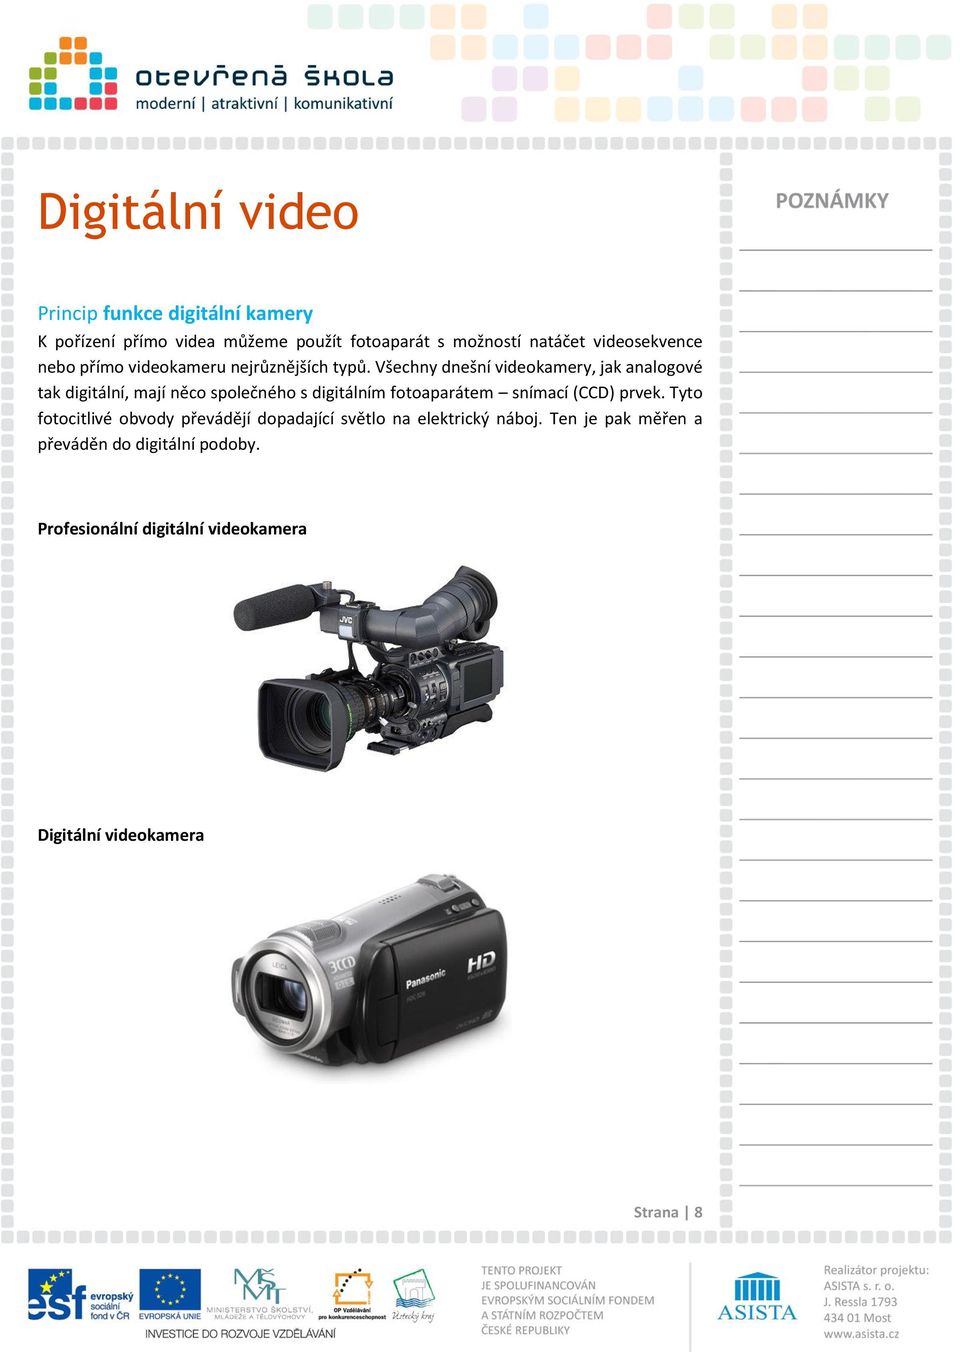 Všechny dnešní videokamery, jak analogové tak digitální, mají něco společného s digitálním fotoaparátem snímací (CCD)